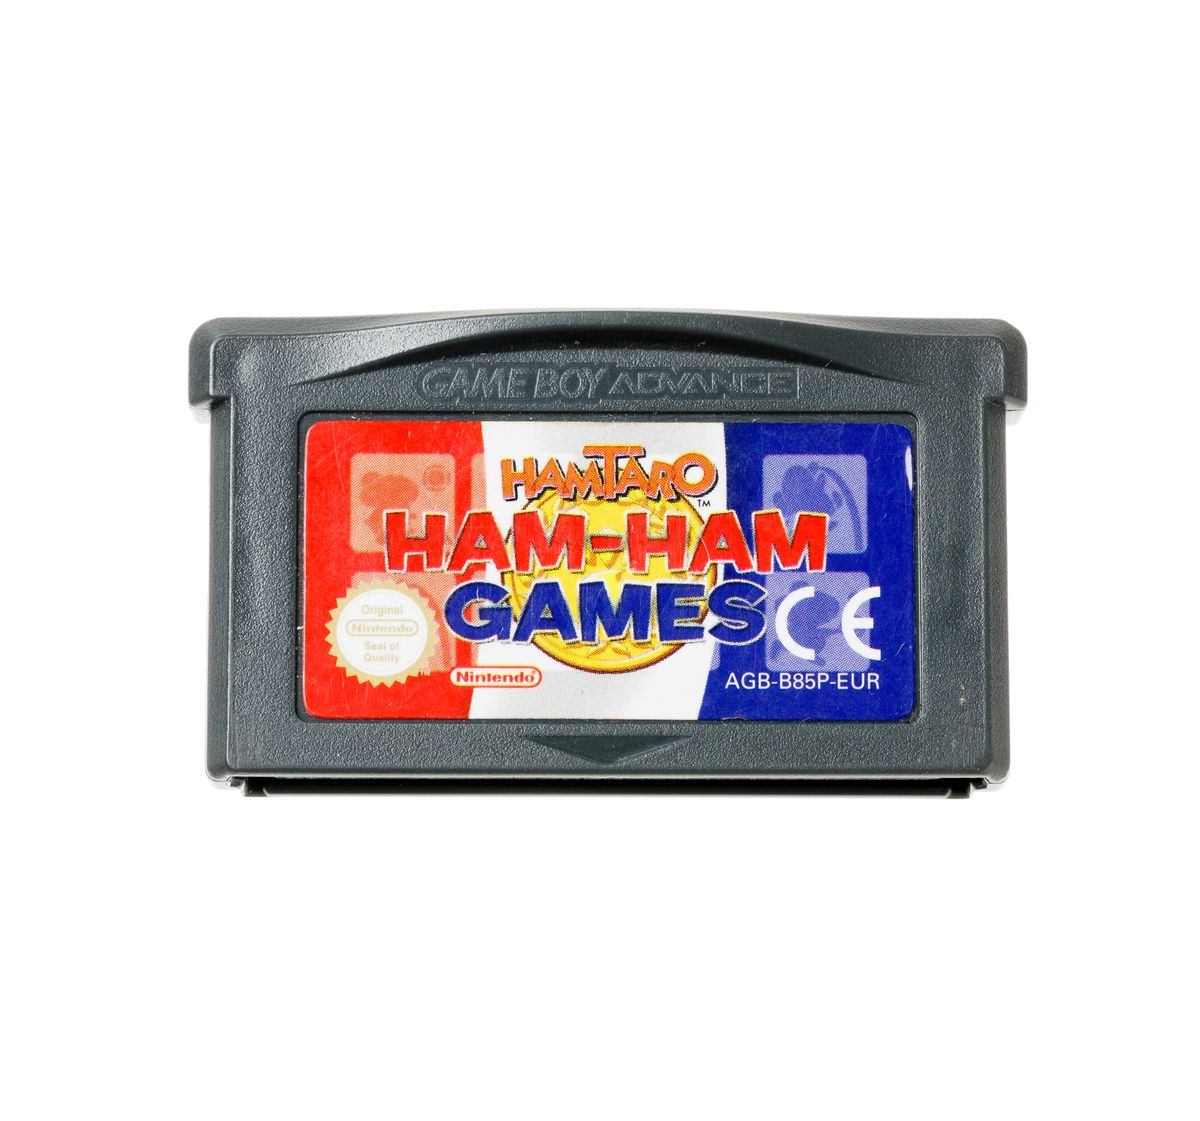 HamTaro Ham-Ham Games Kopen | Gameboy Advance Games